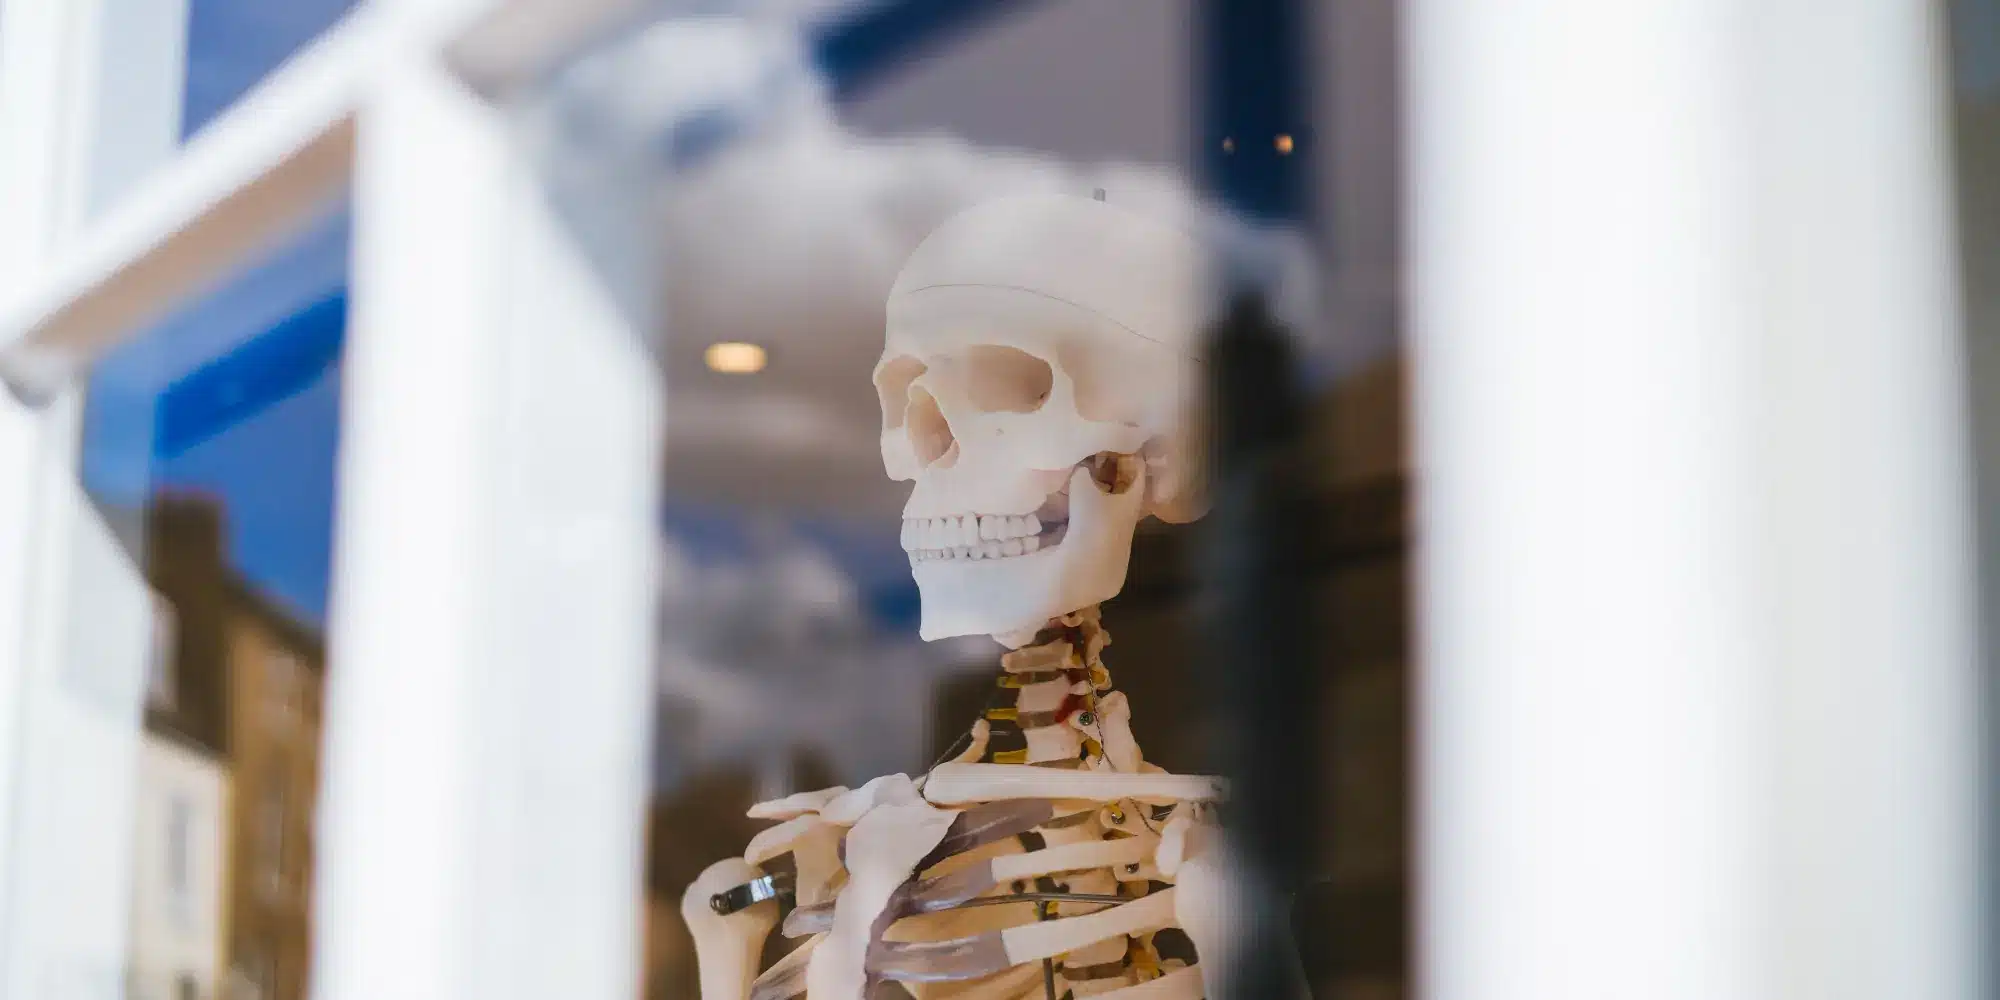 Ανθρώπινος σκελετός